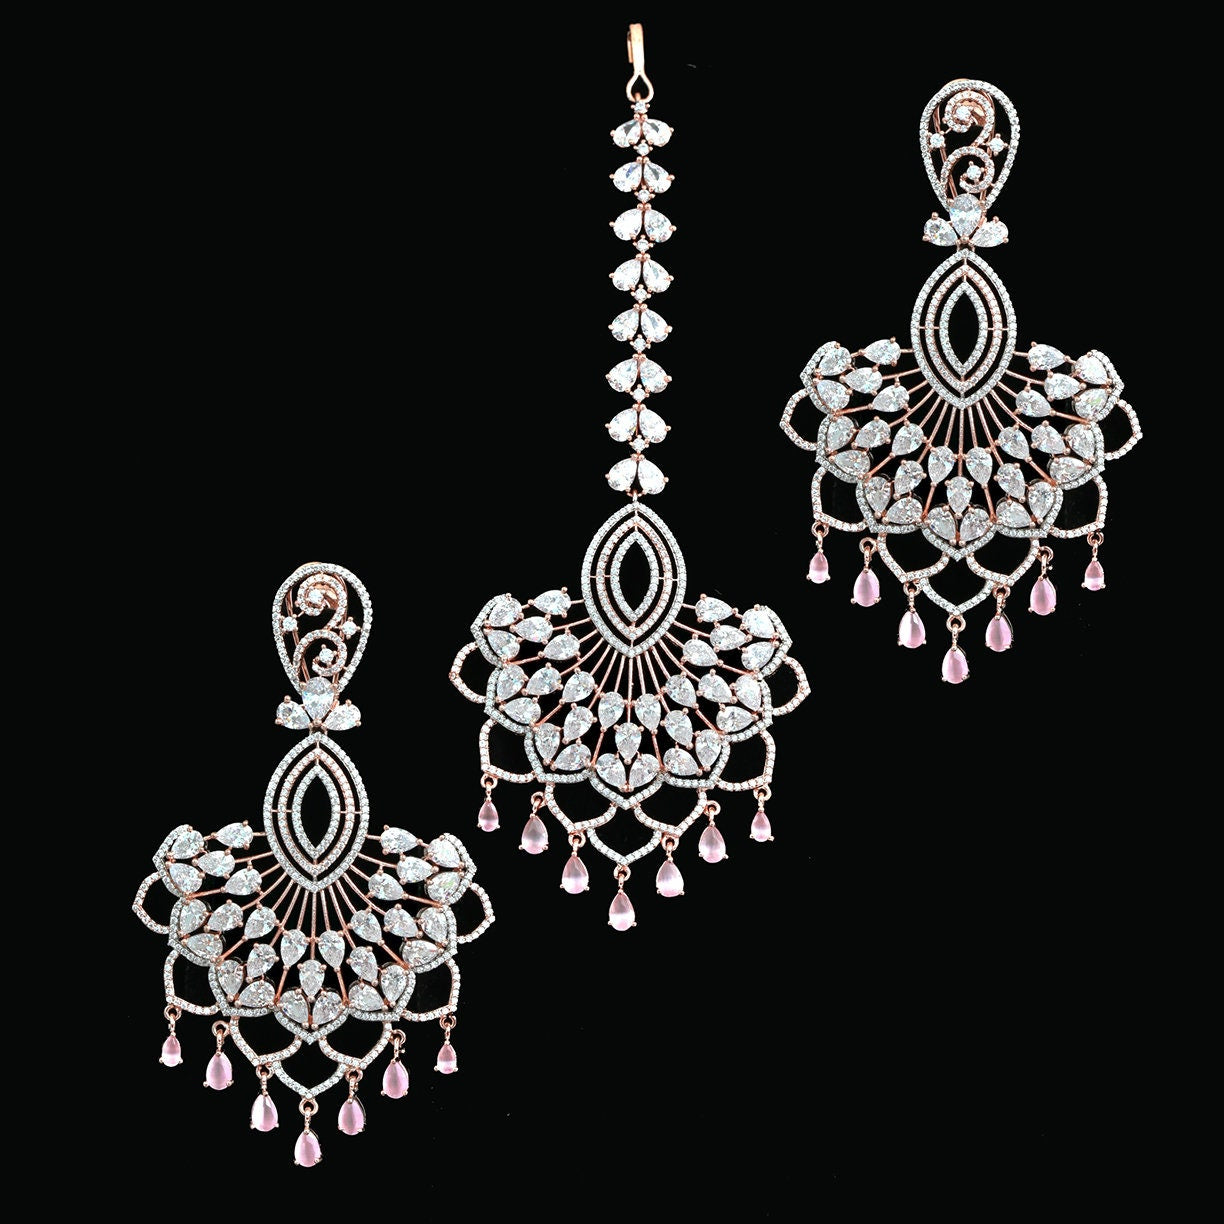 Wedding earrings maang tikka set | Chandbali earrings tikka set | wedding earrings for bride | Latest Punjabi earrings with maang tikka